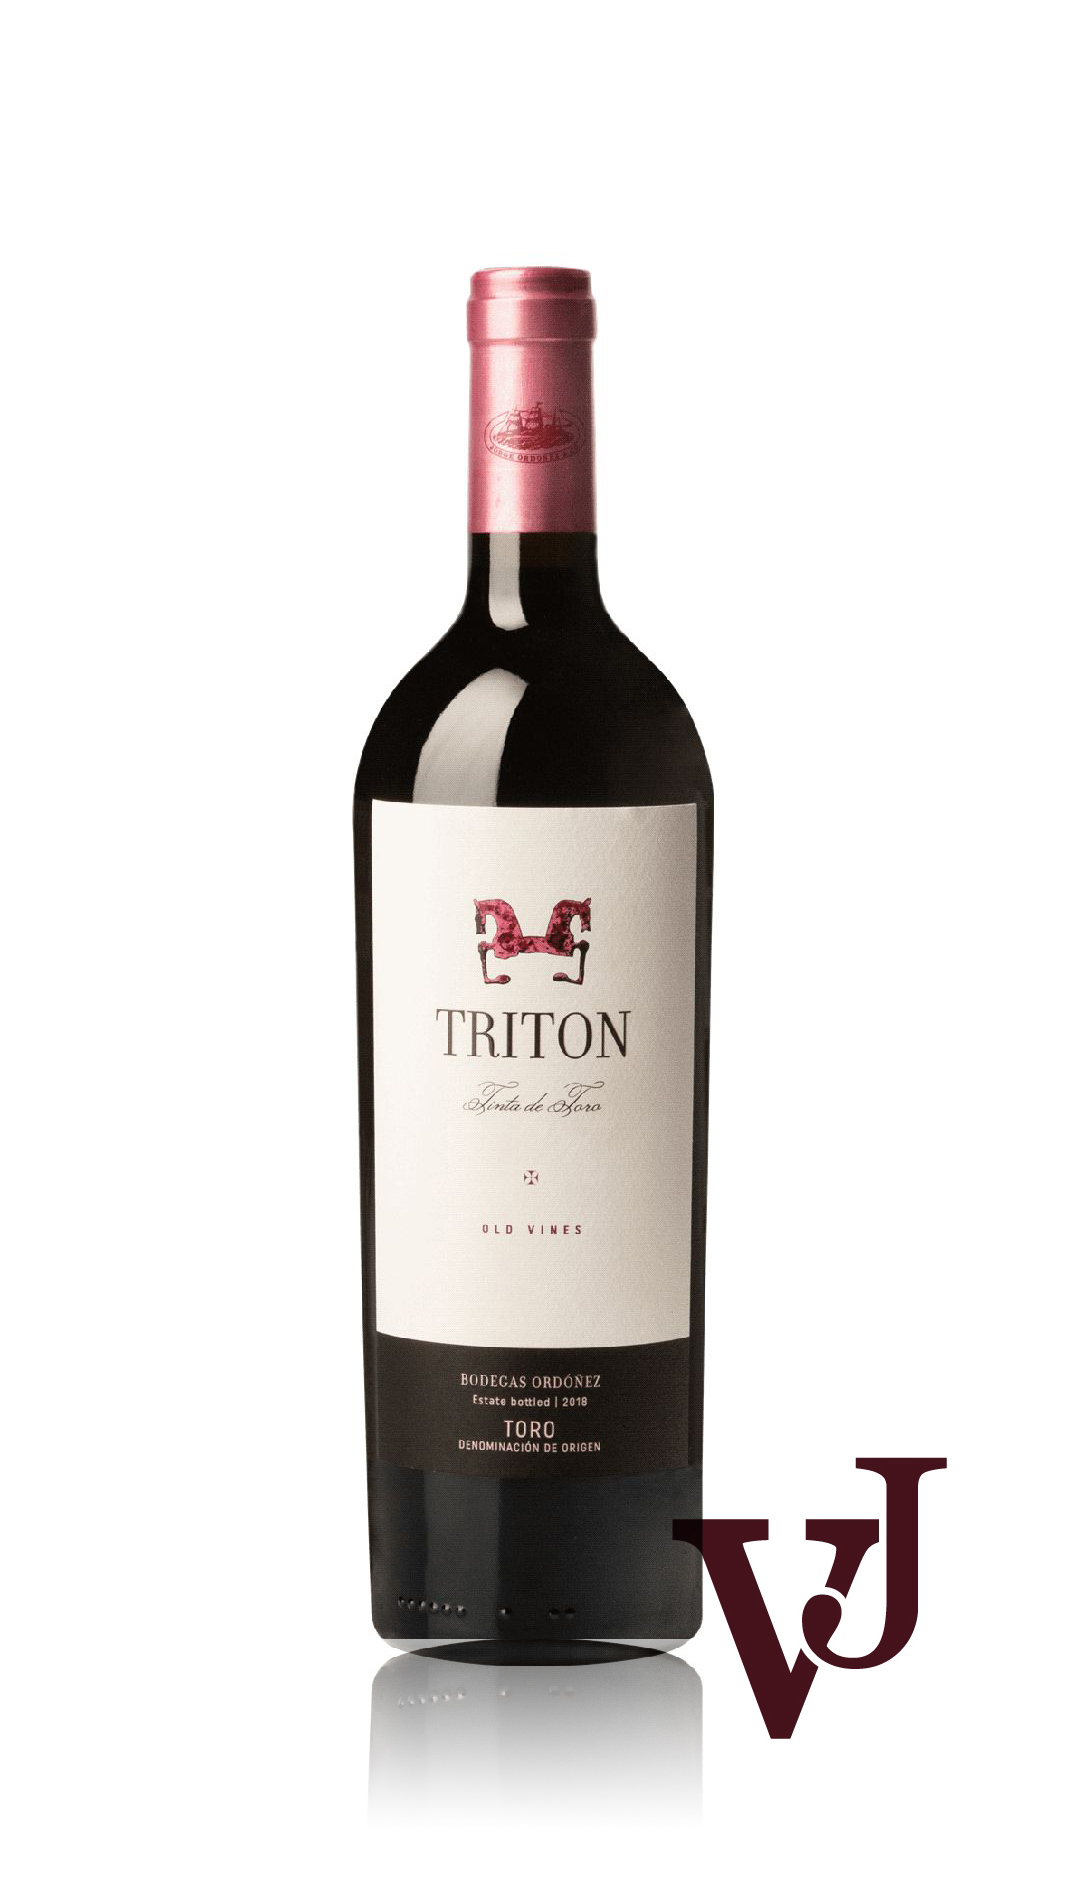 Rött Vin - Triton artikel nummer 5287701 från producenten Bodegas Vatan S.L från området Spanien